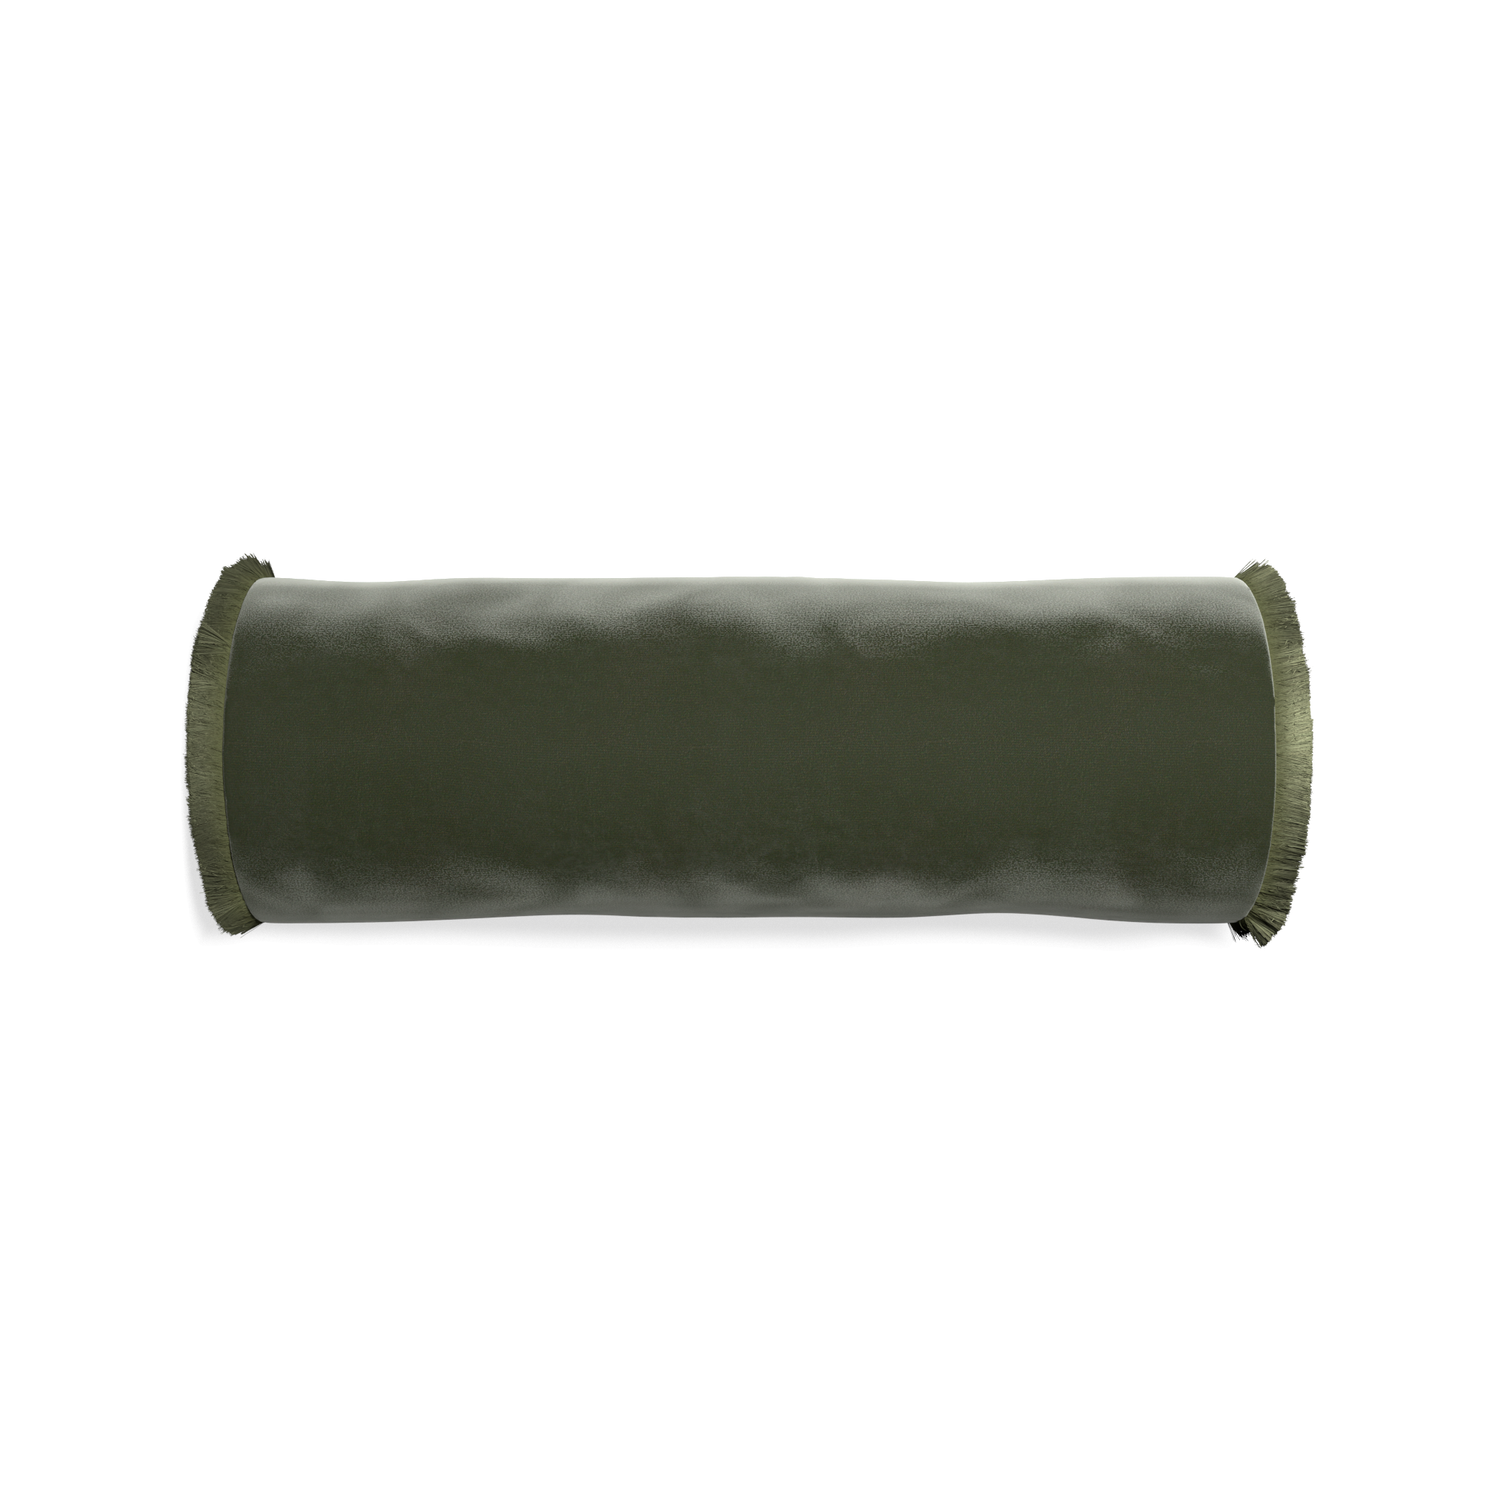 bolster fern green velvet pillow with sage green fringe